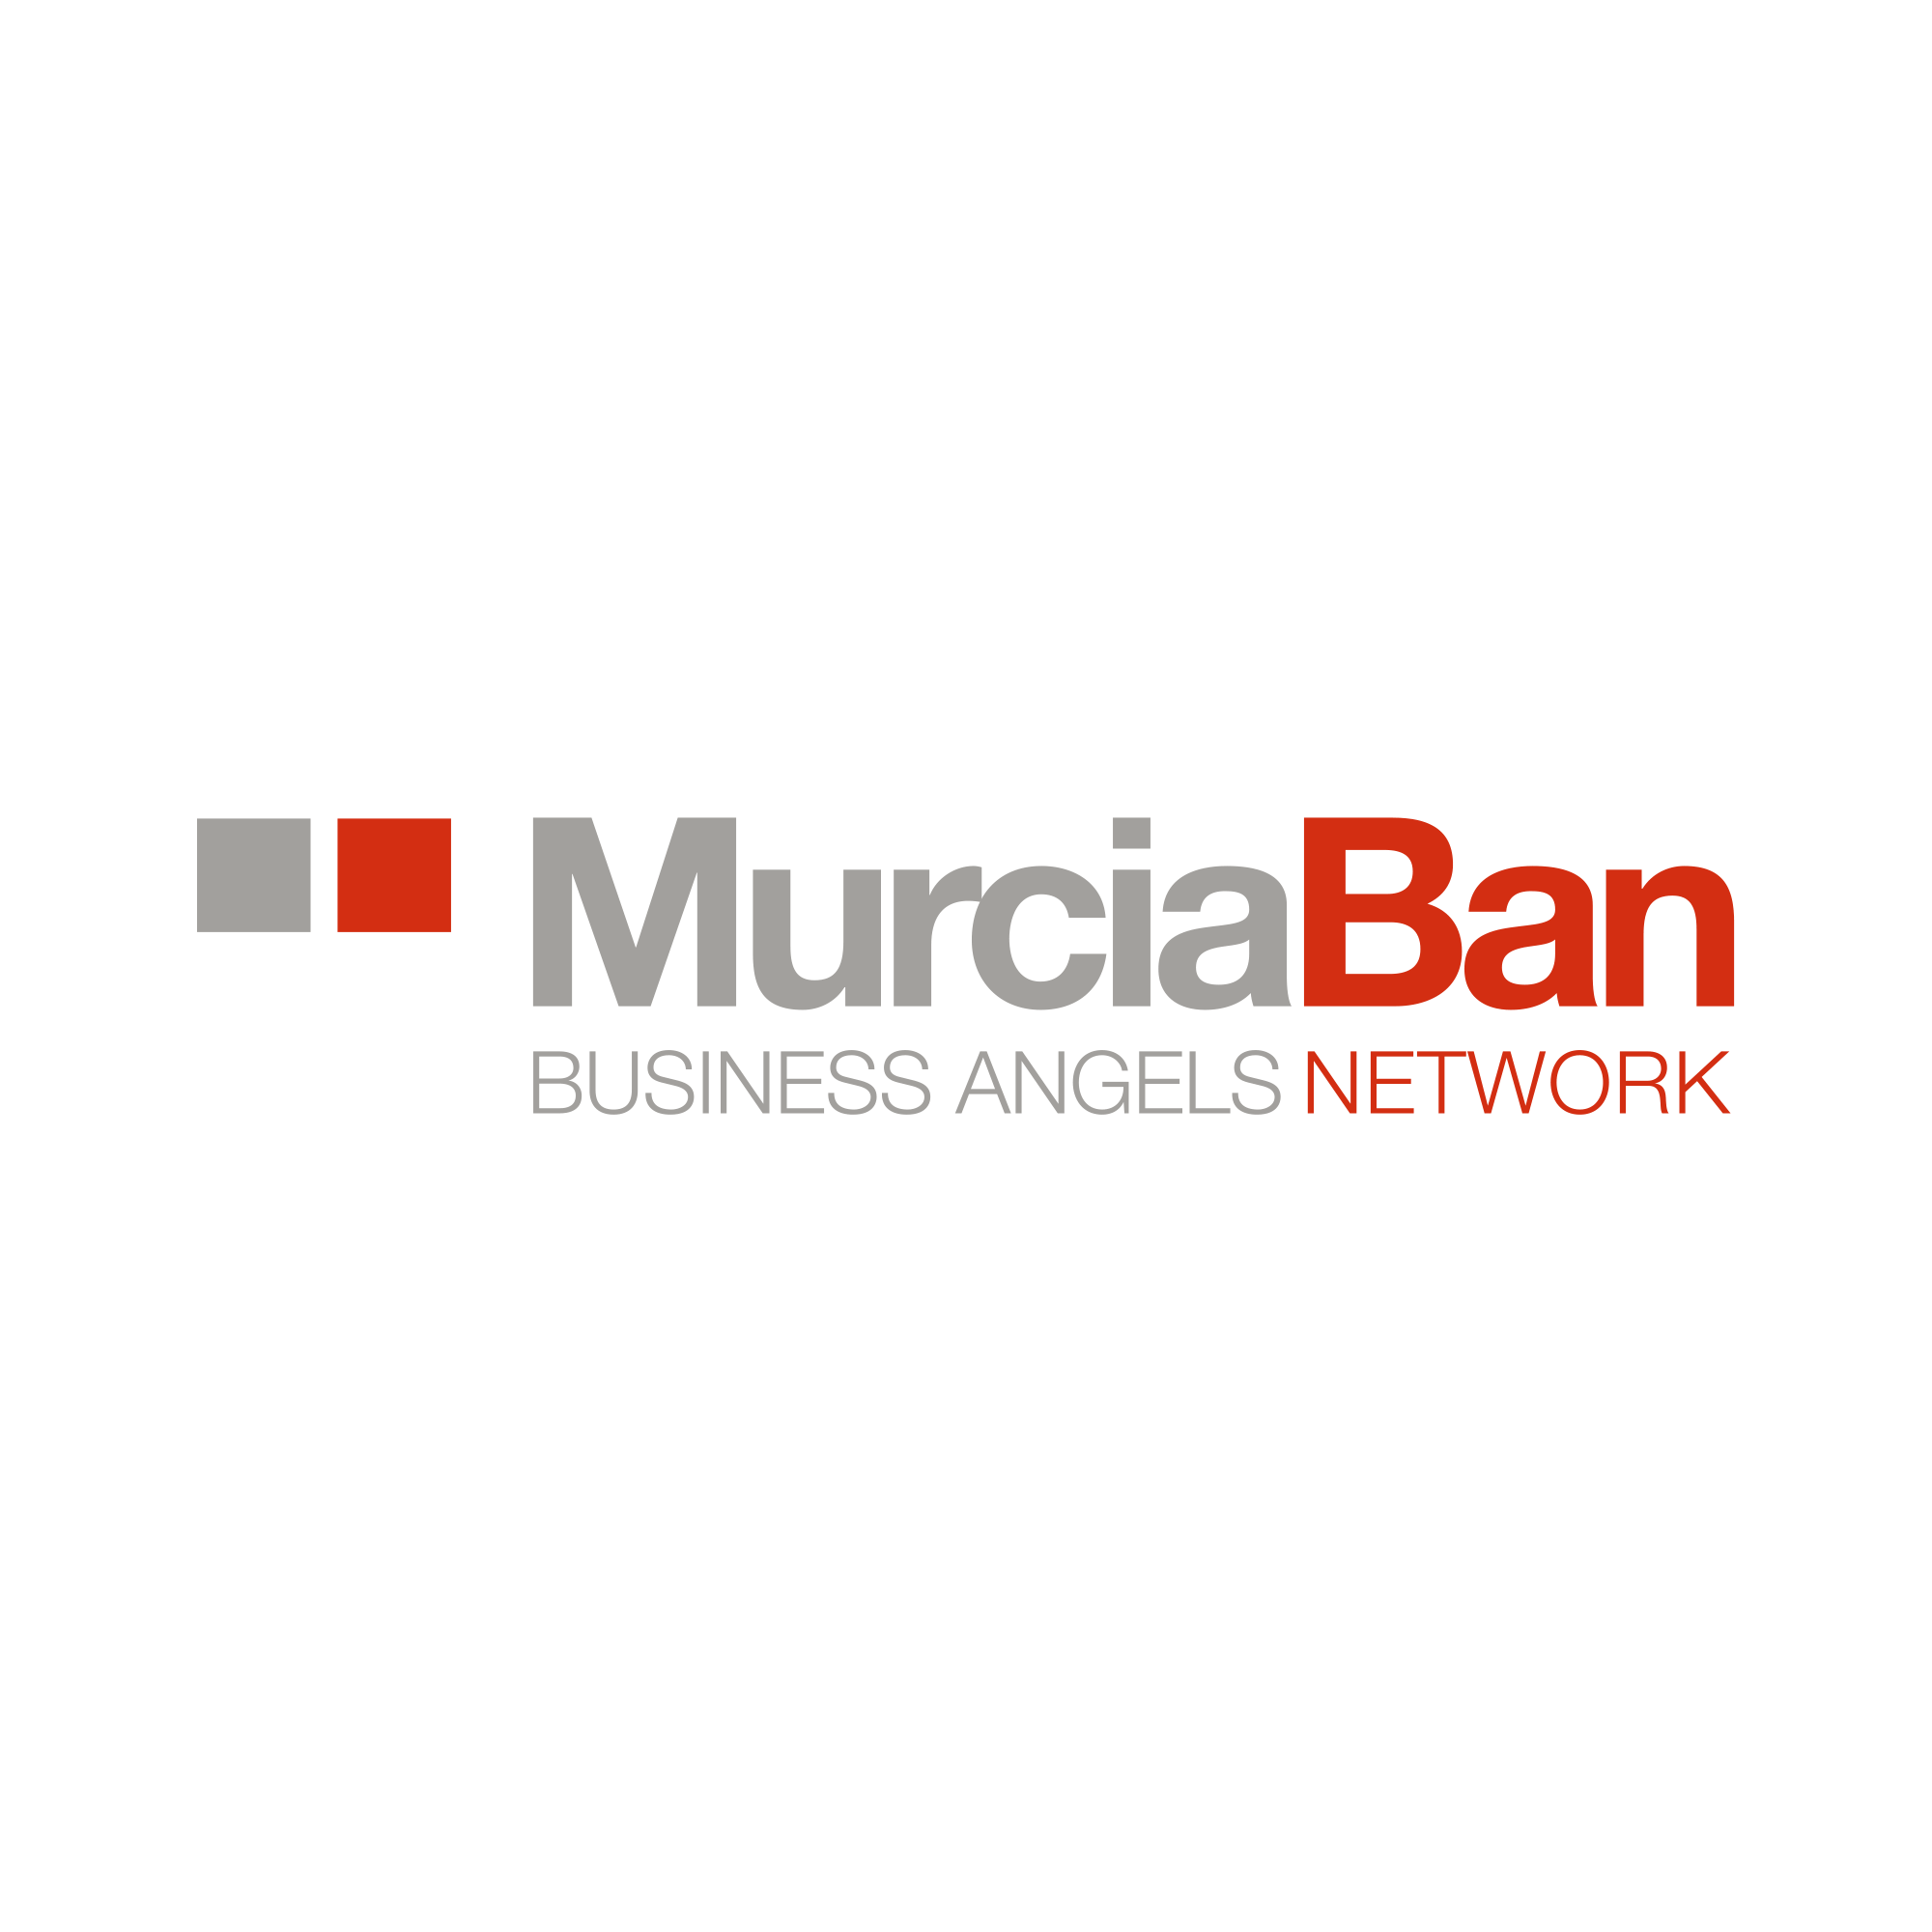 Murciaban